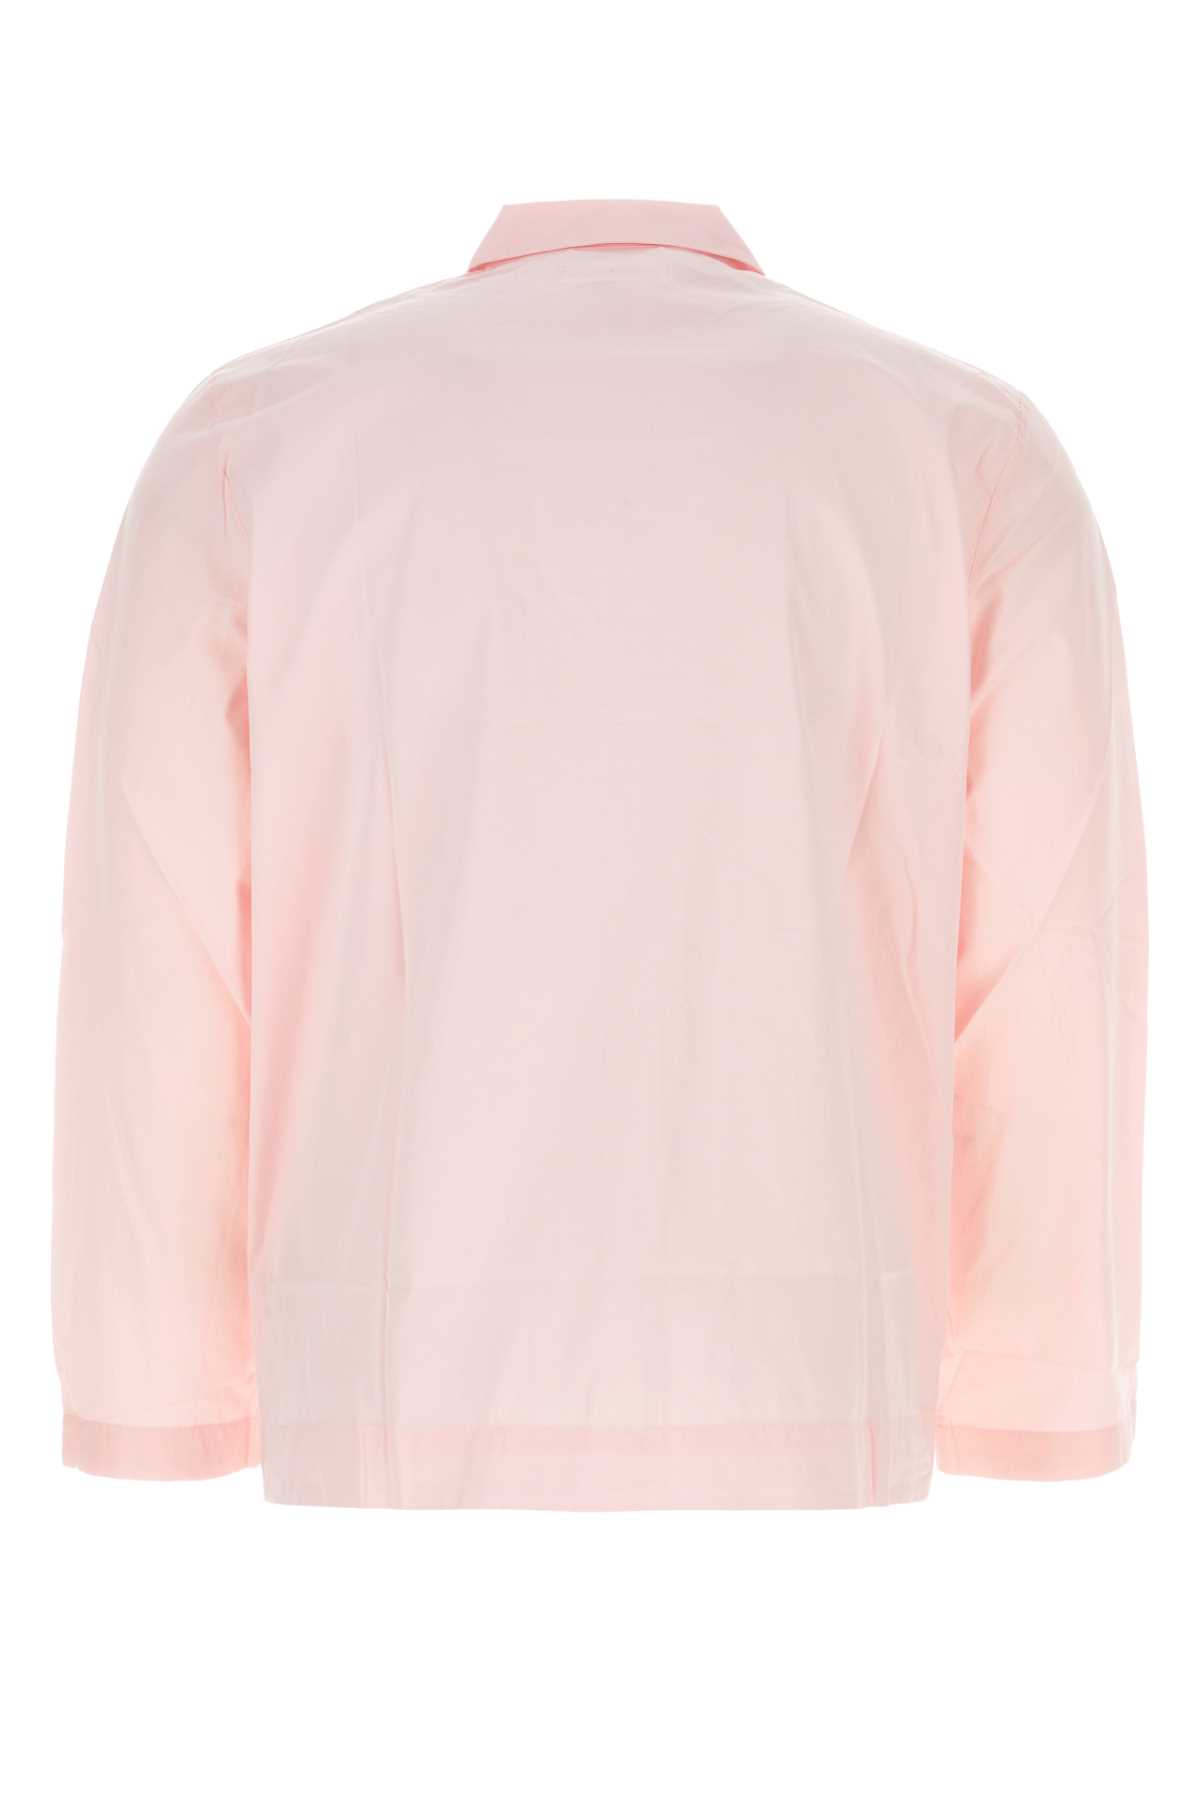 Tekla Pink Cotton Pyjama Shirt In Softpink